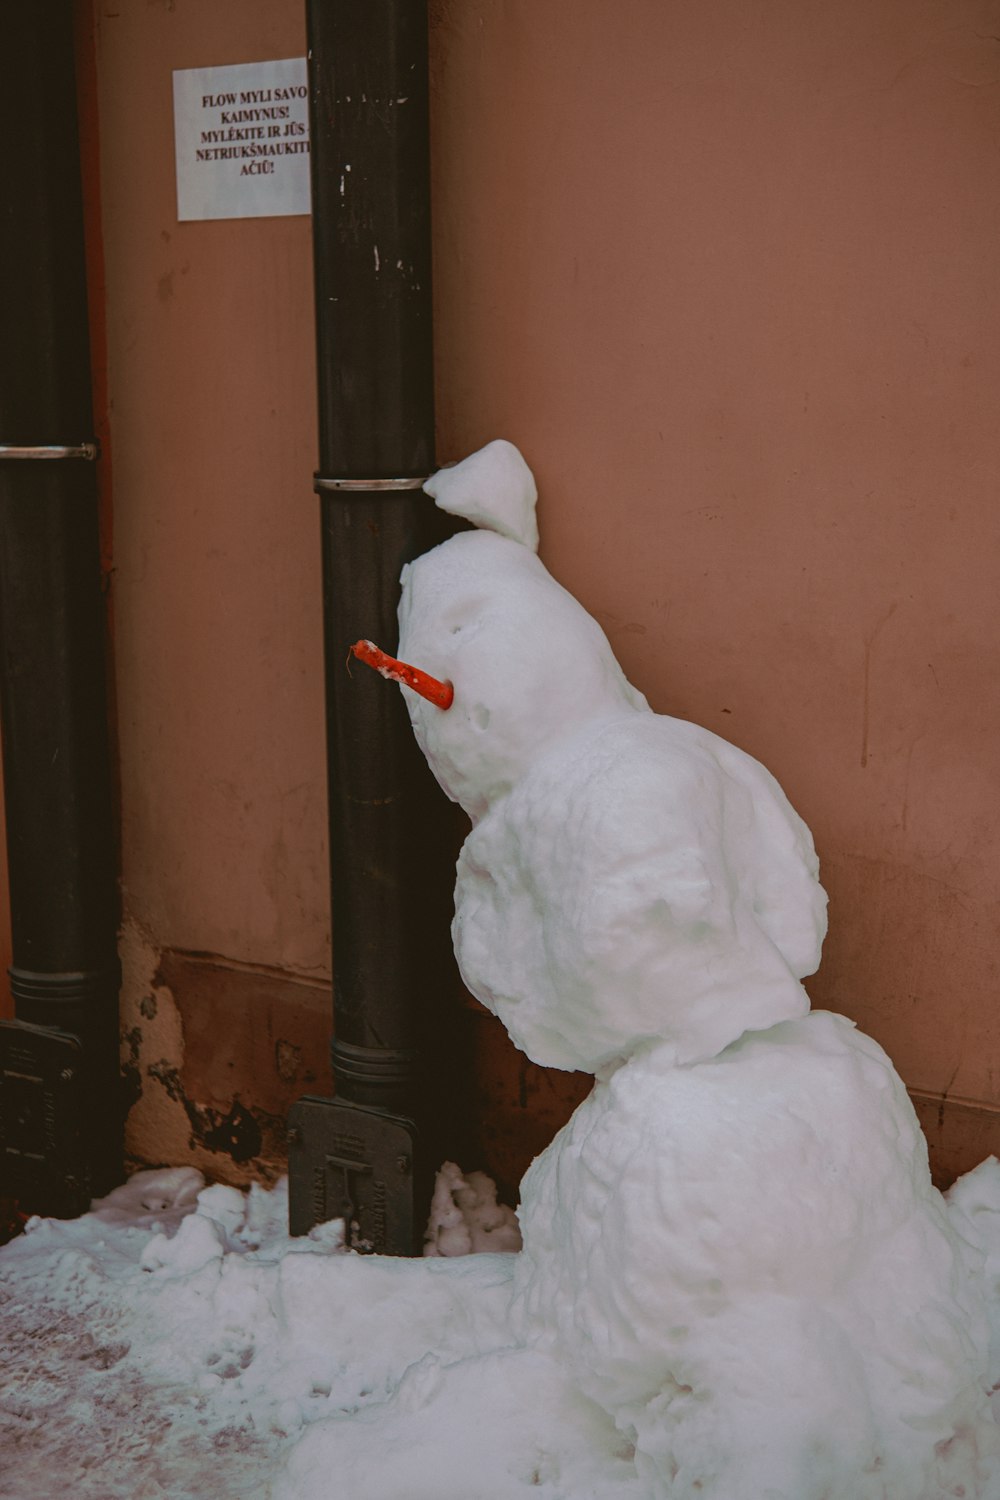 white snowman near brown wooden door